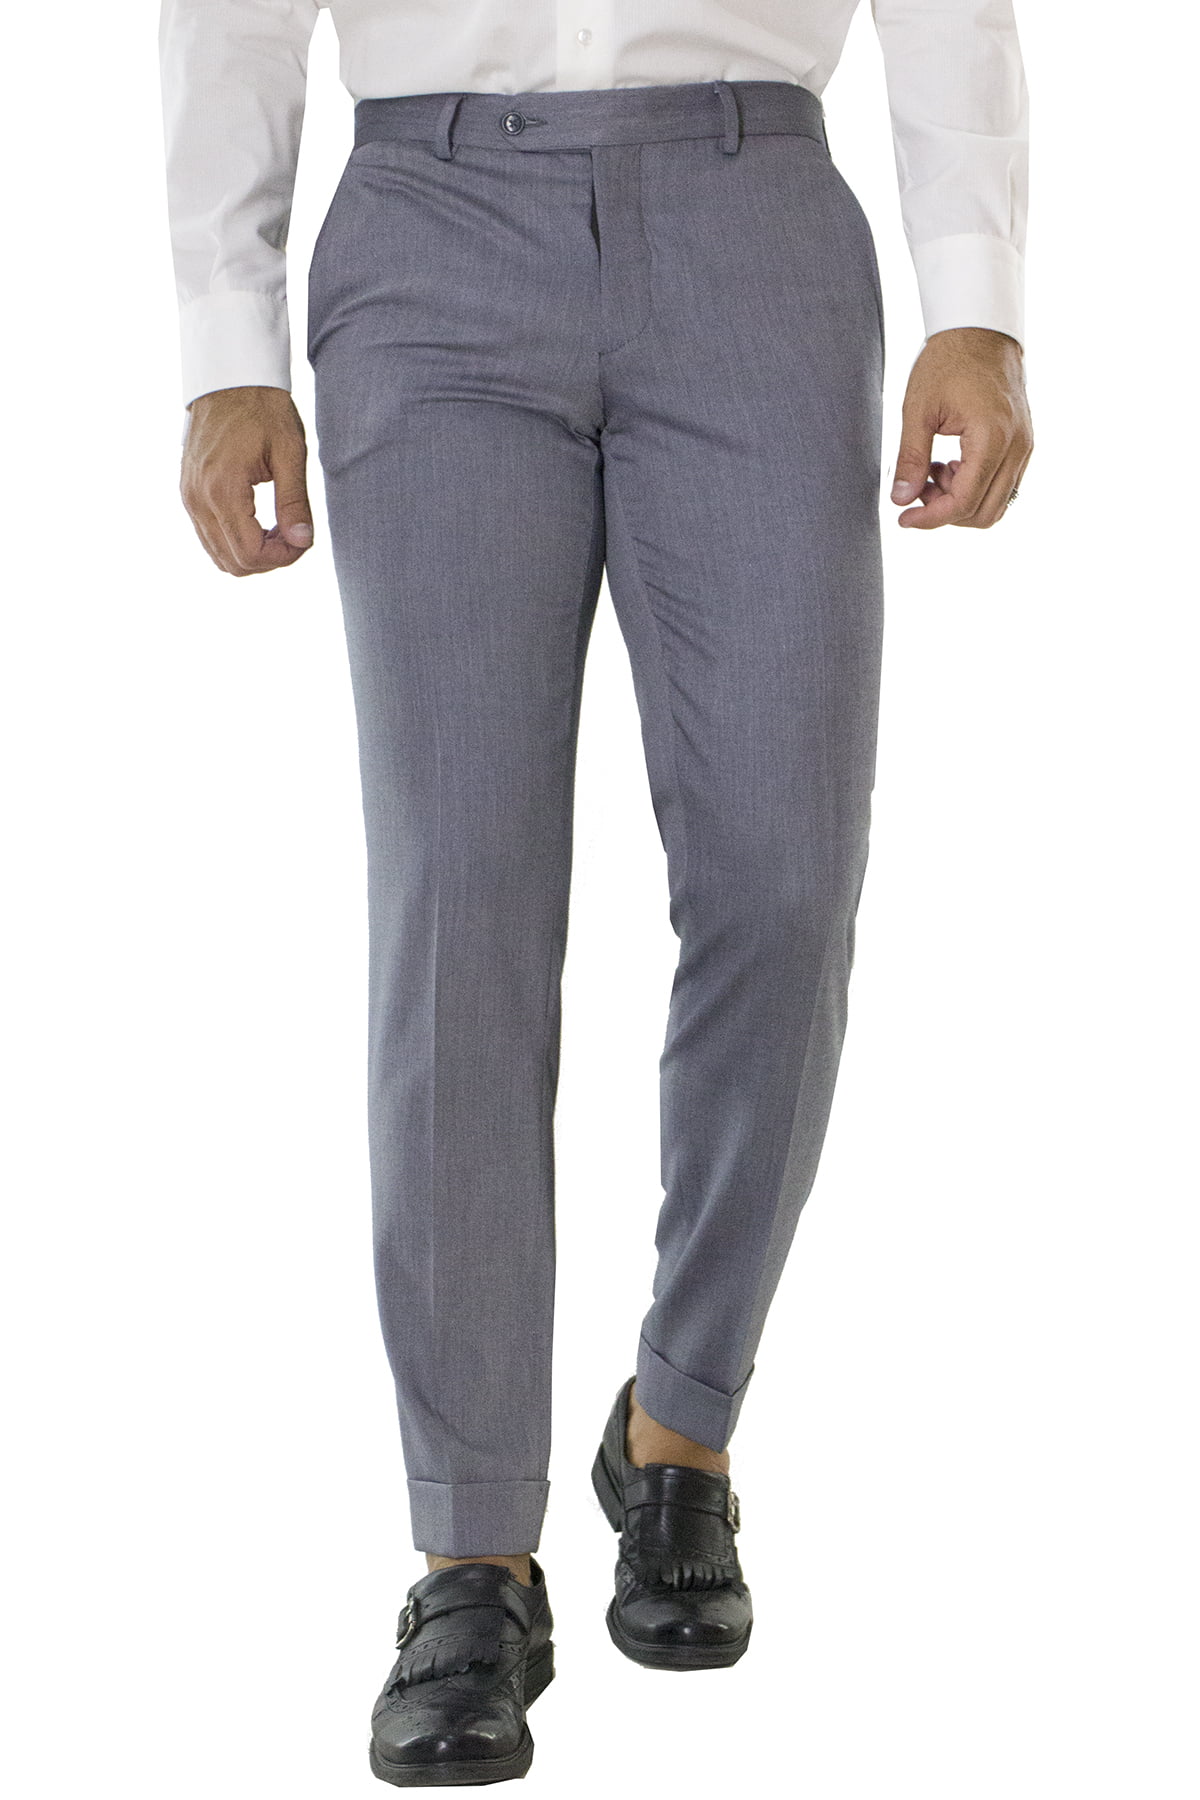 Pantalone uomo grigio chiaro in lana con tasche america e risvolto 4cm